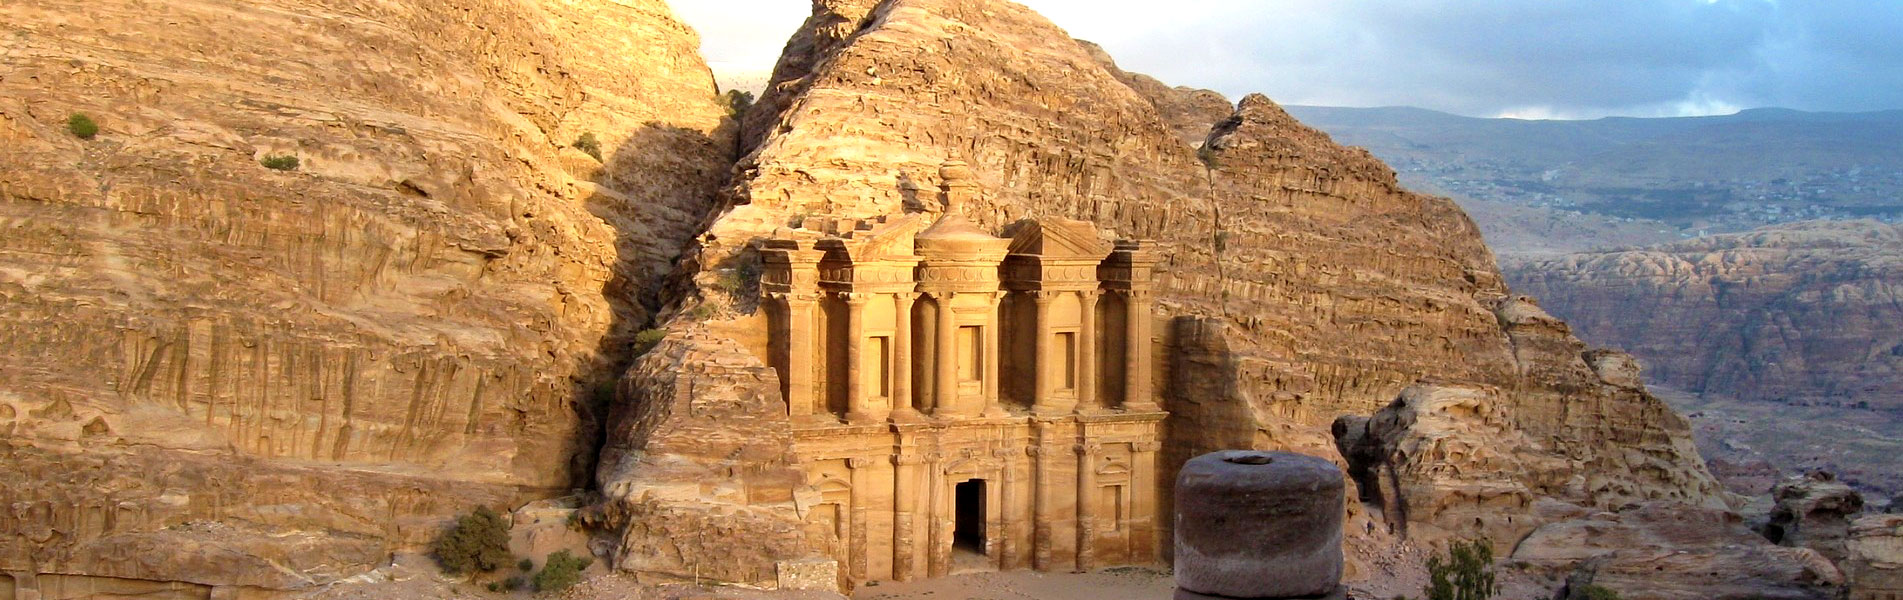 Petra Ancient City, Jordan